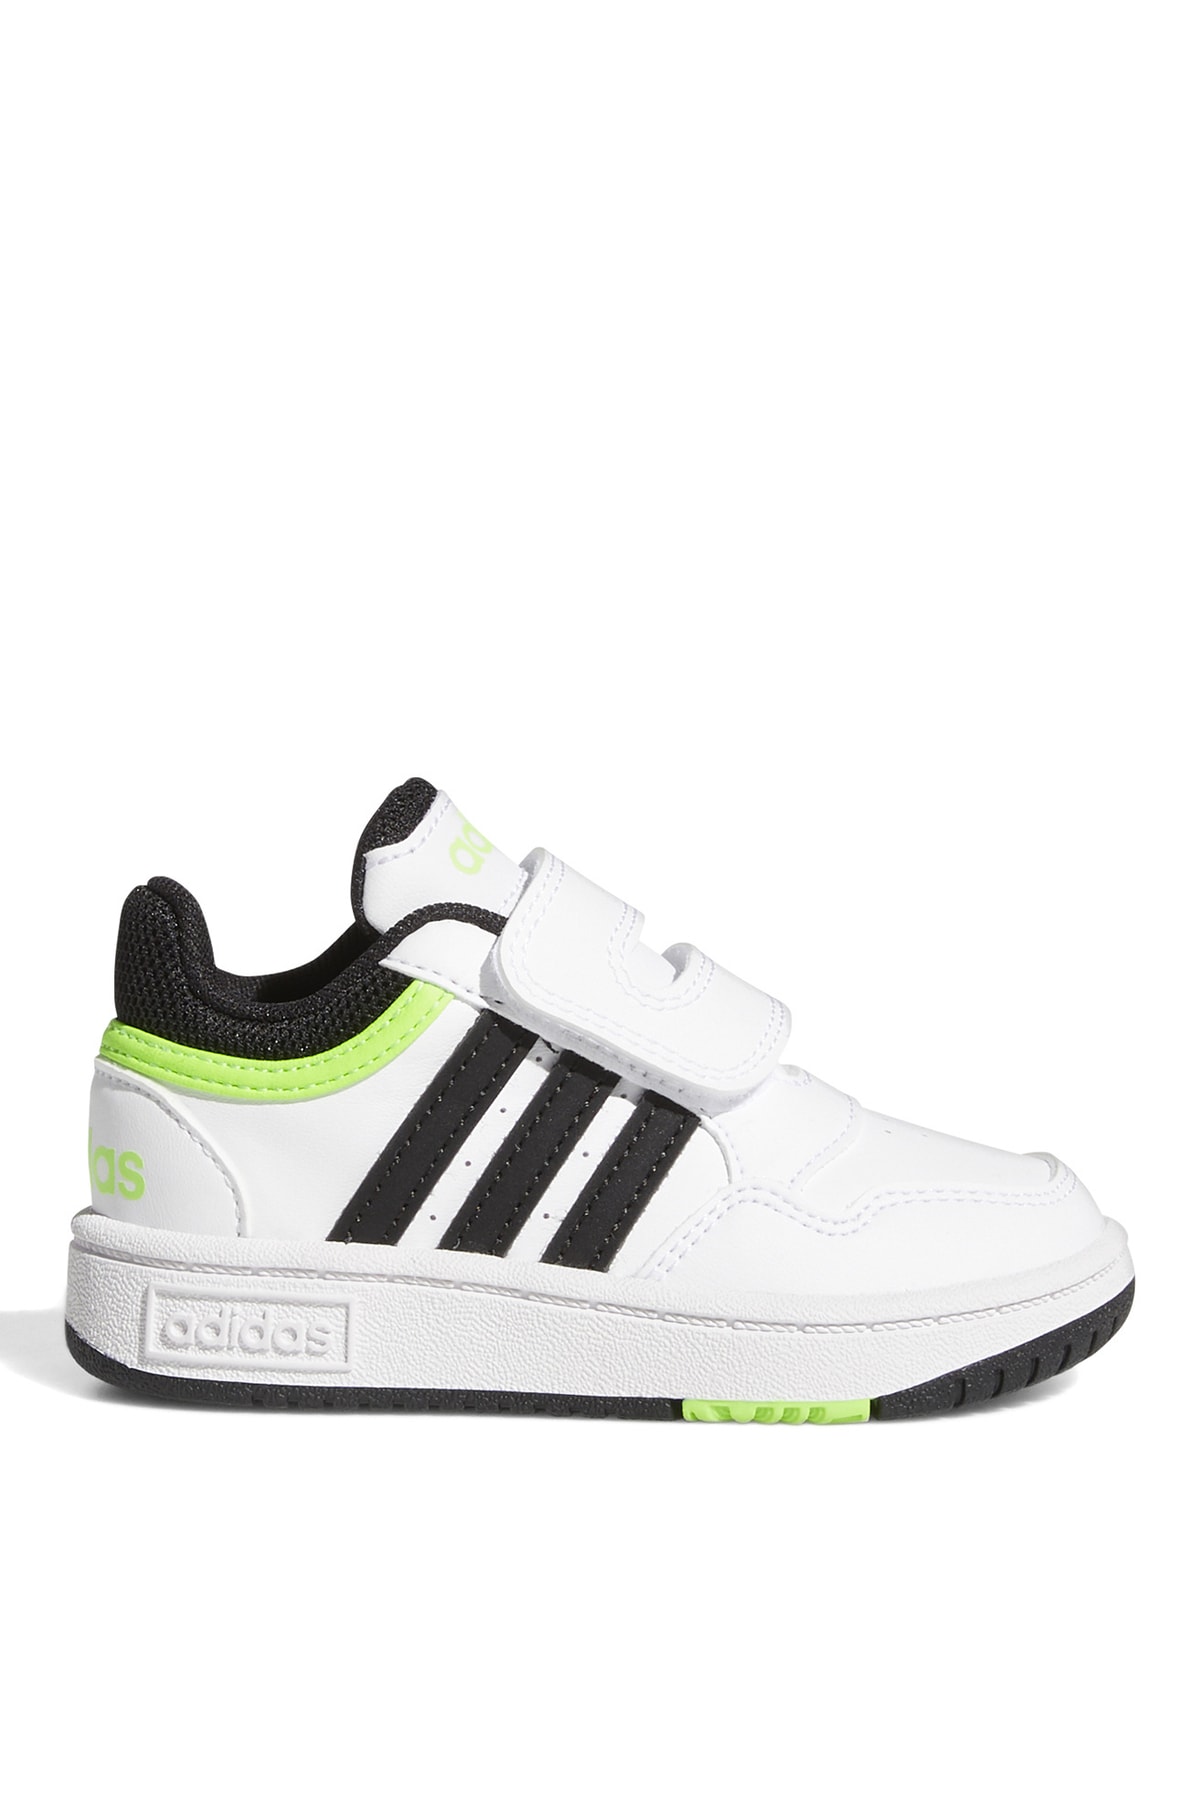 adidas Yeşil - Beyaz - Siyah Bebek Yürüyüş Ayakkabısı Gw0441 Hoops 3.0 Cf I